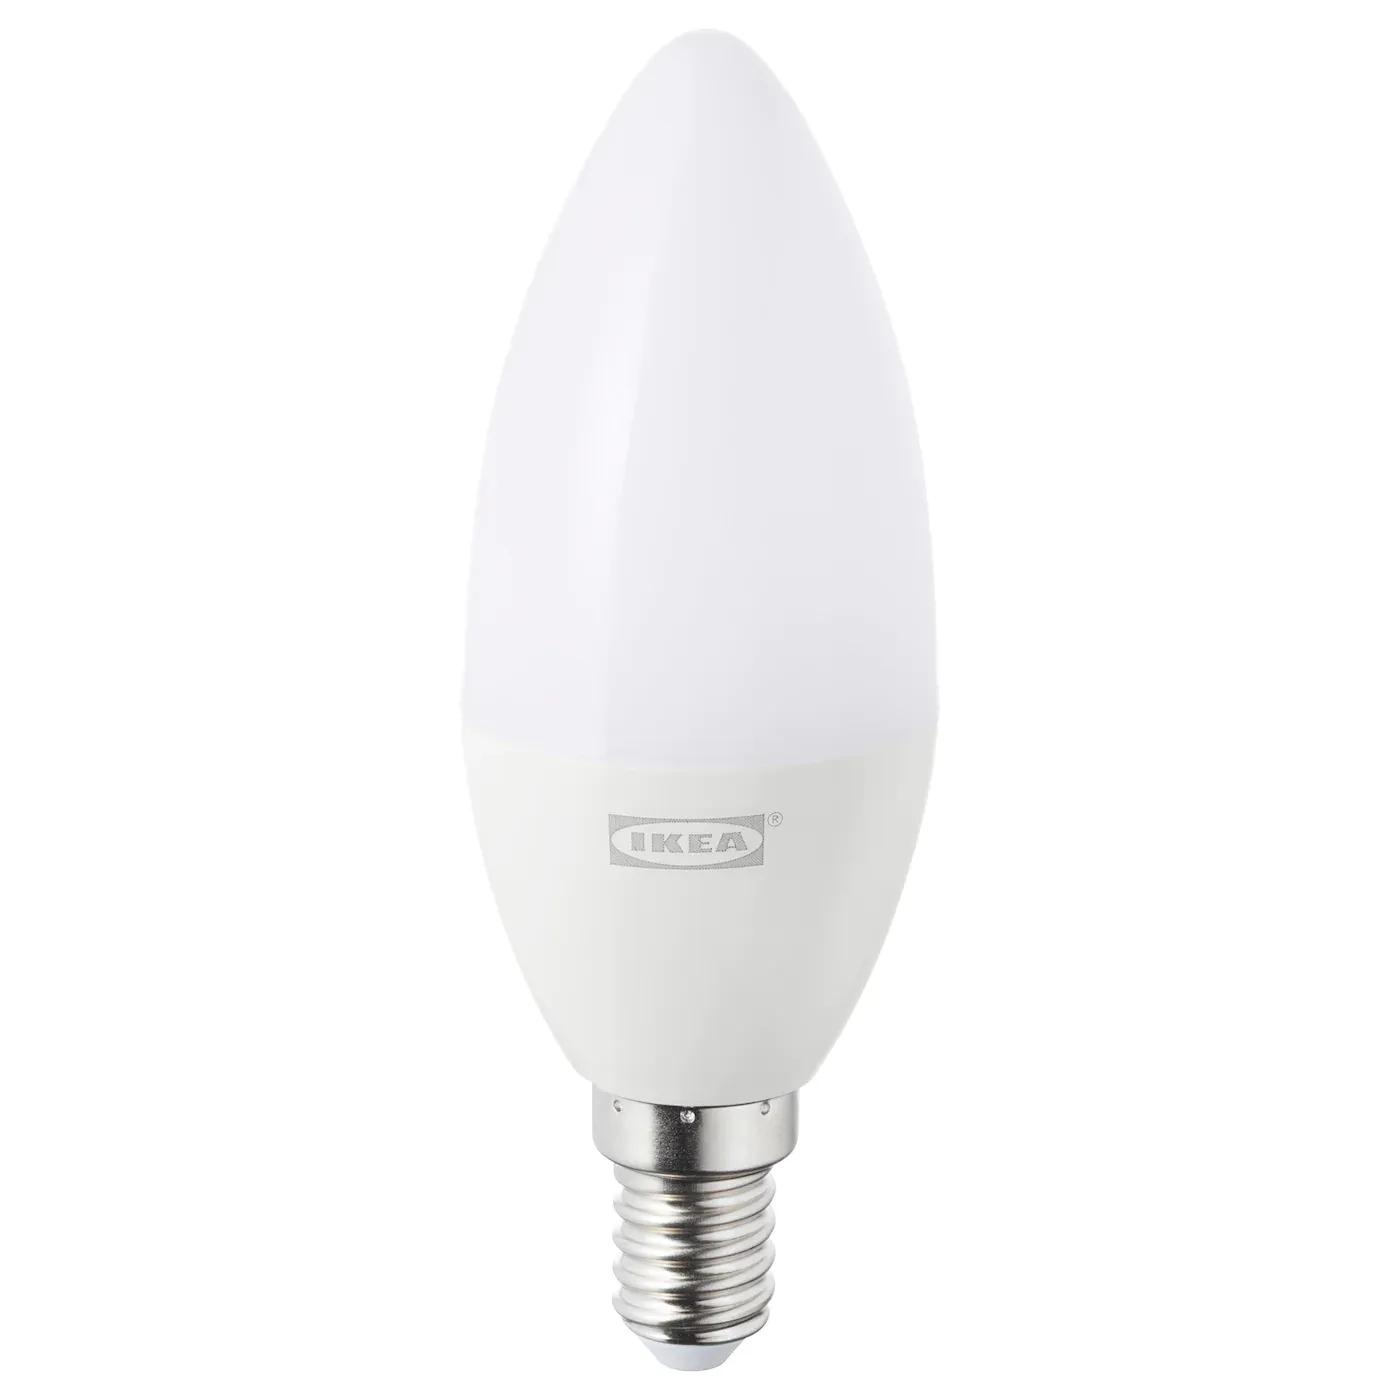 Tradfri LED bulb E14 400 lumen, wireless dimmable warm white, chandelier opal